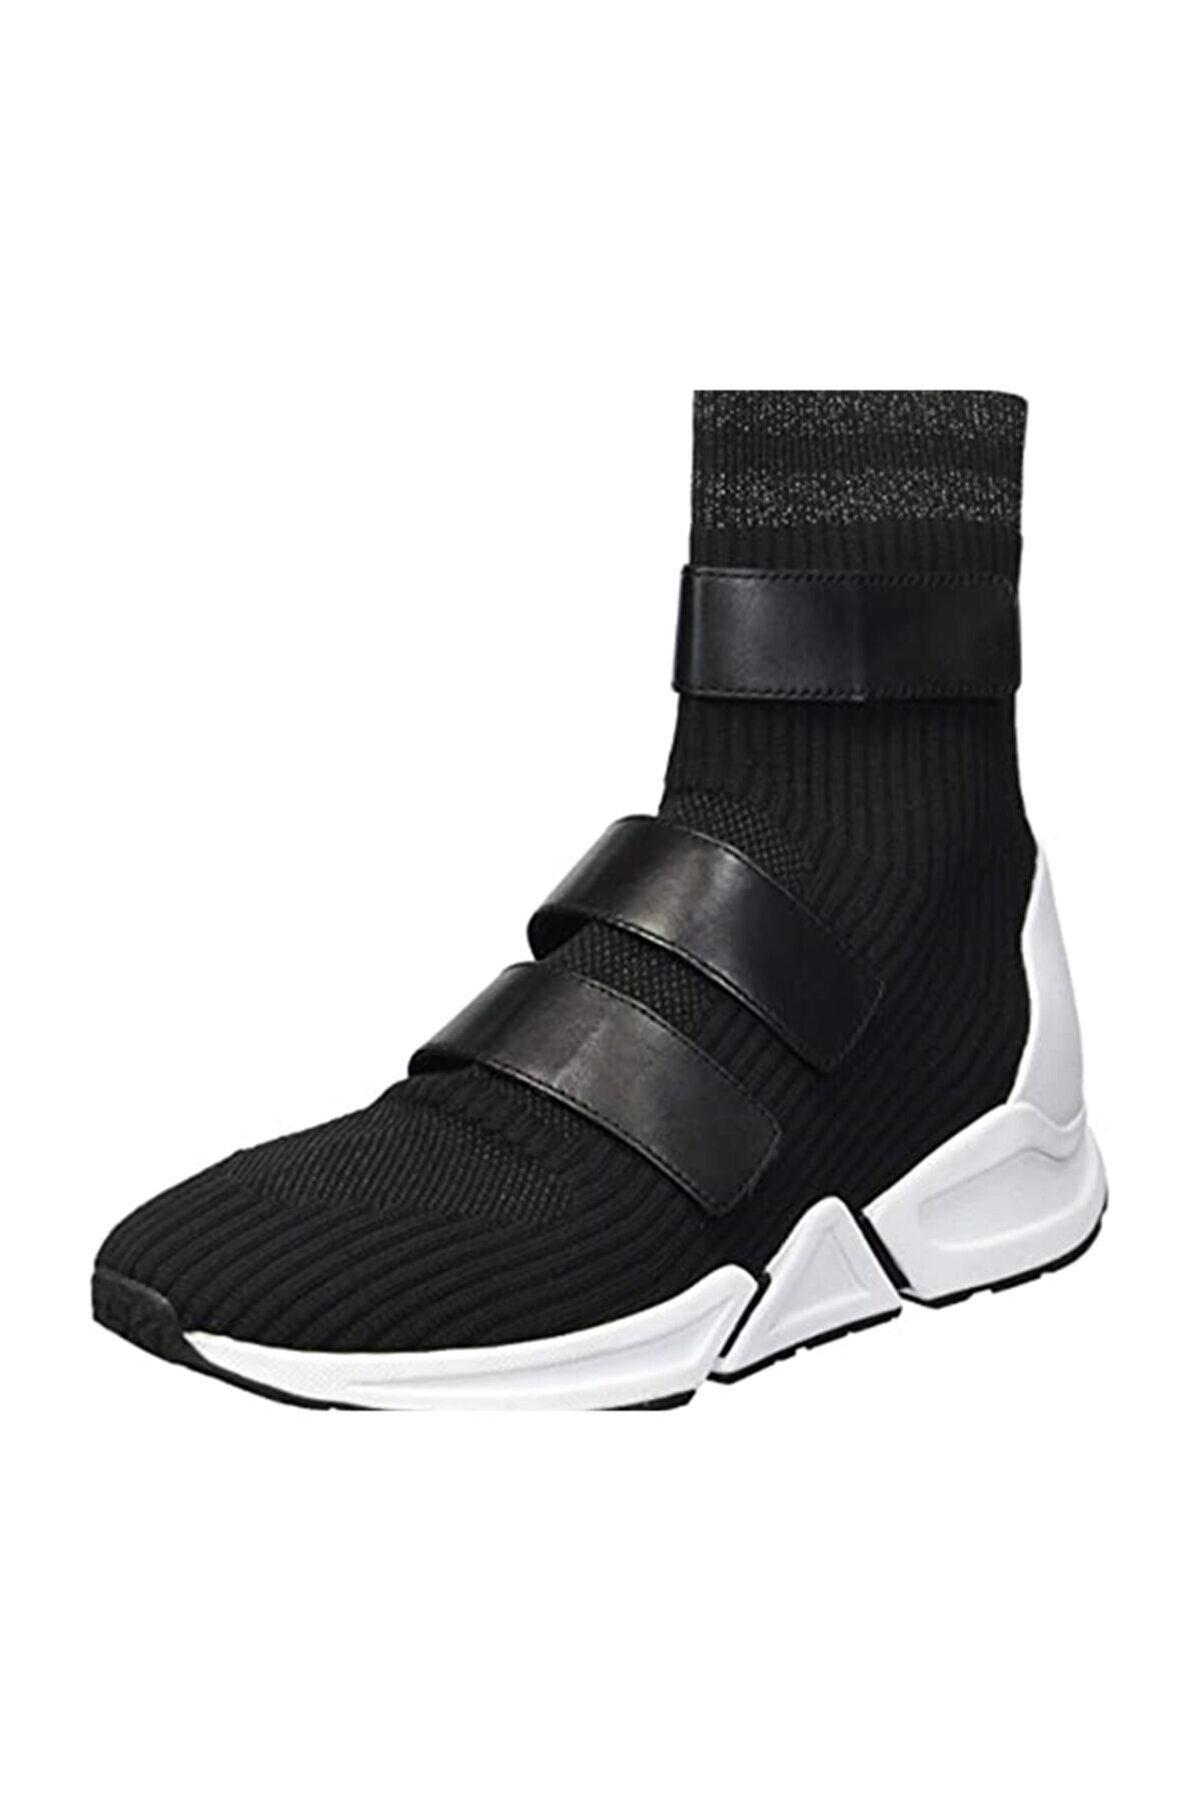 Ash Kadın Çorap Spor Ayakkabı Siyah Triton